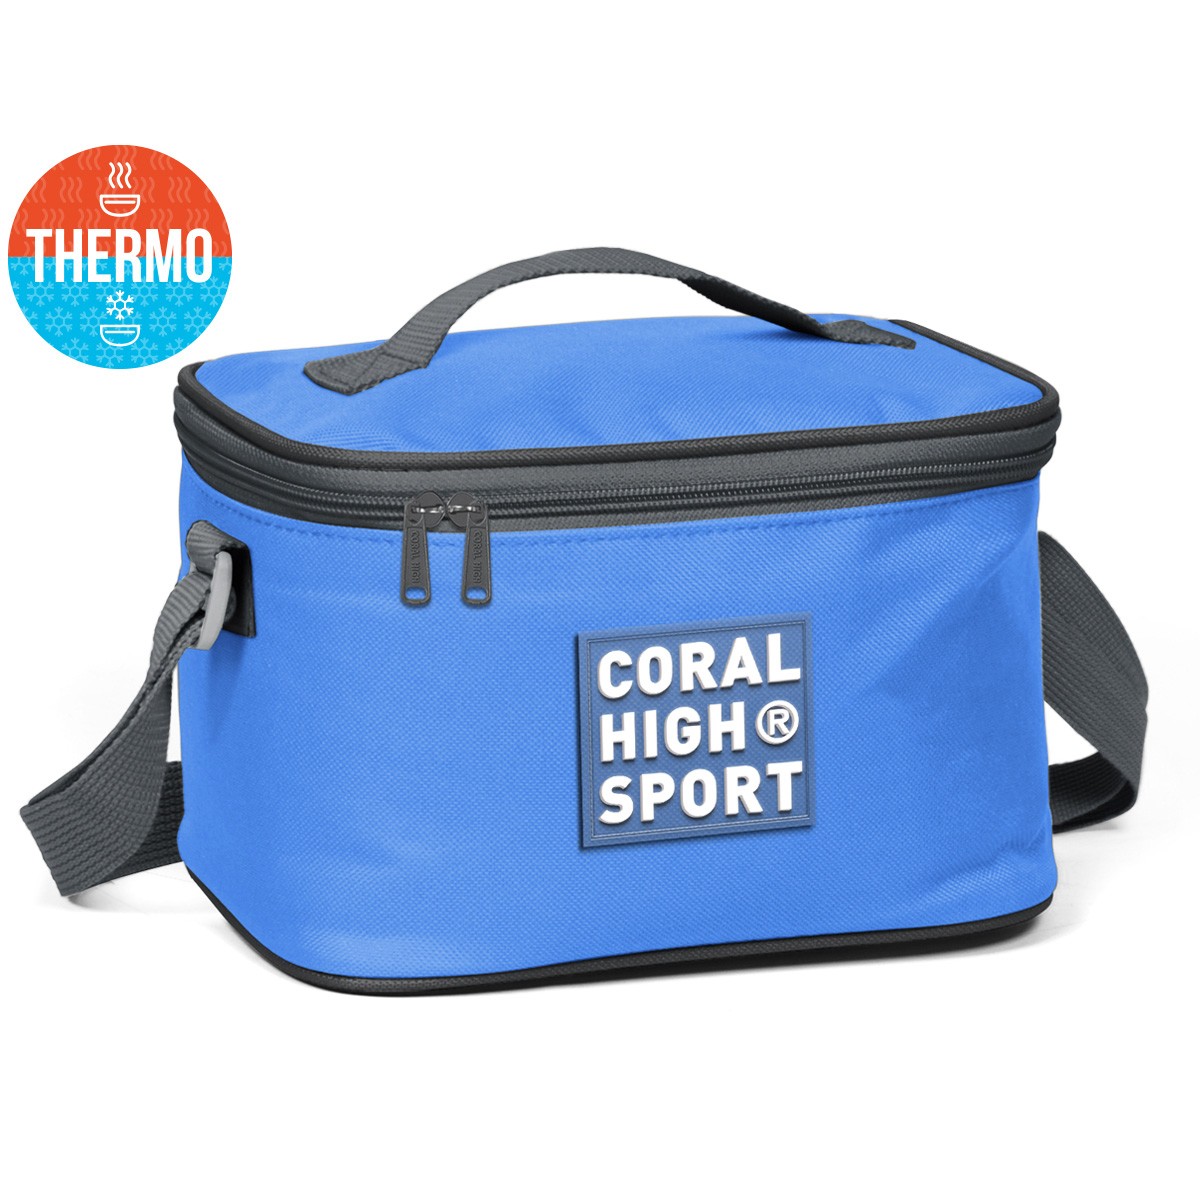 Coral High Sport Derin Mavi Koyu Gri Thermo Beslenme Çantası 22817